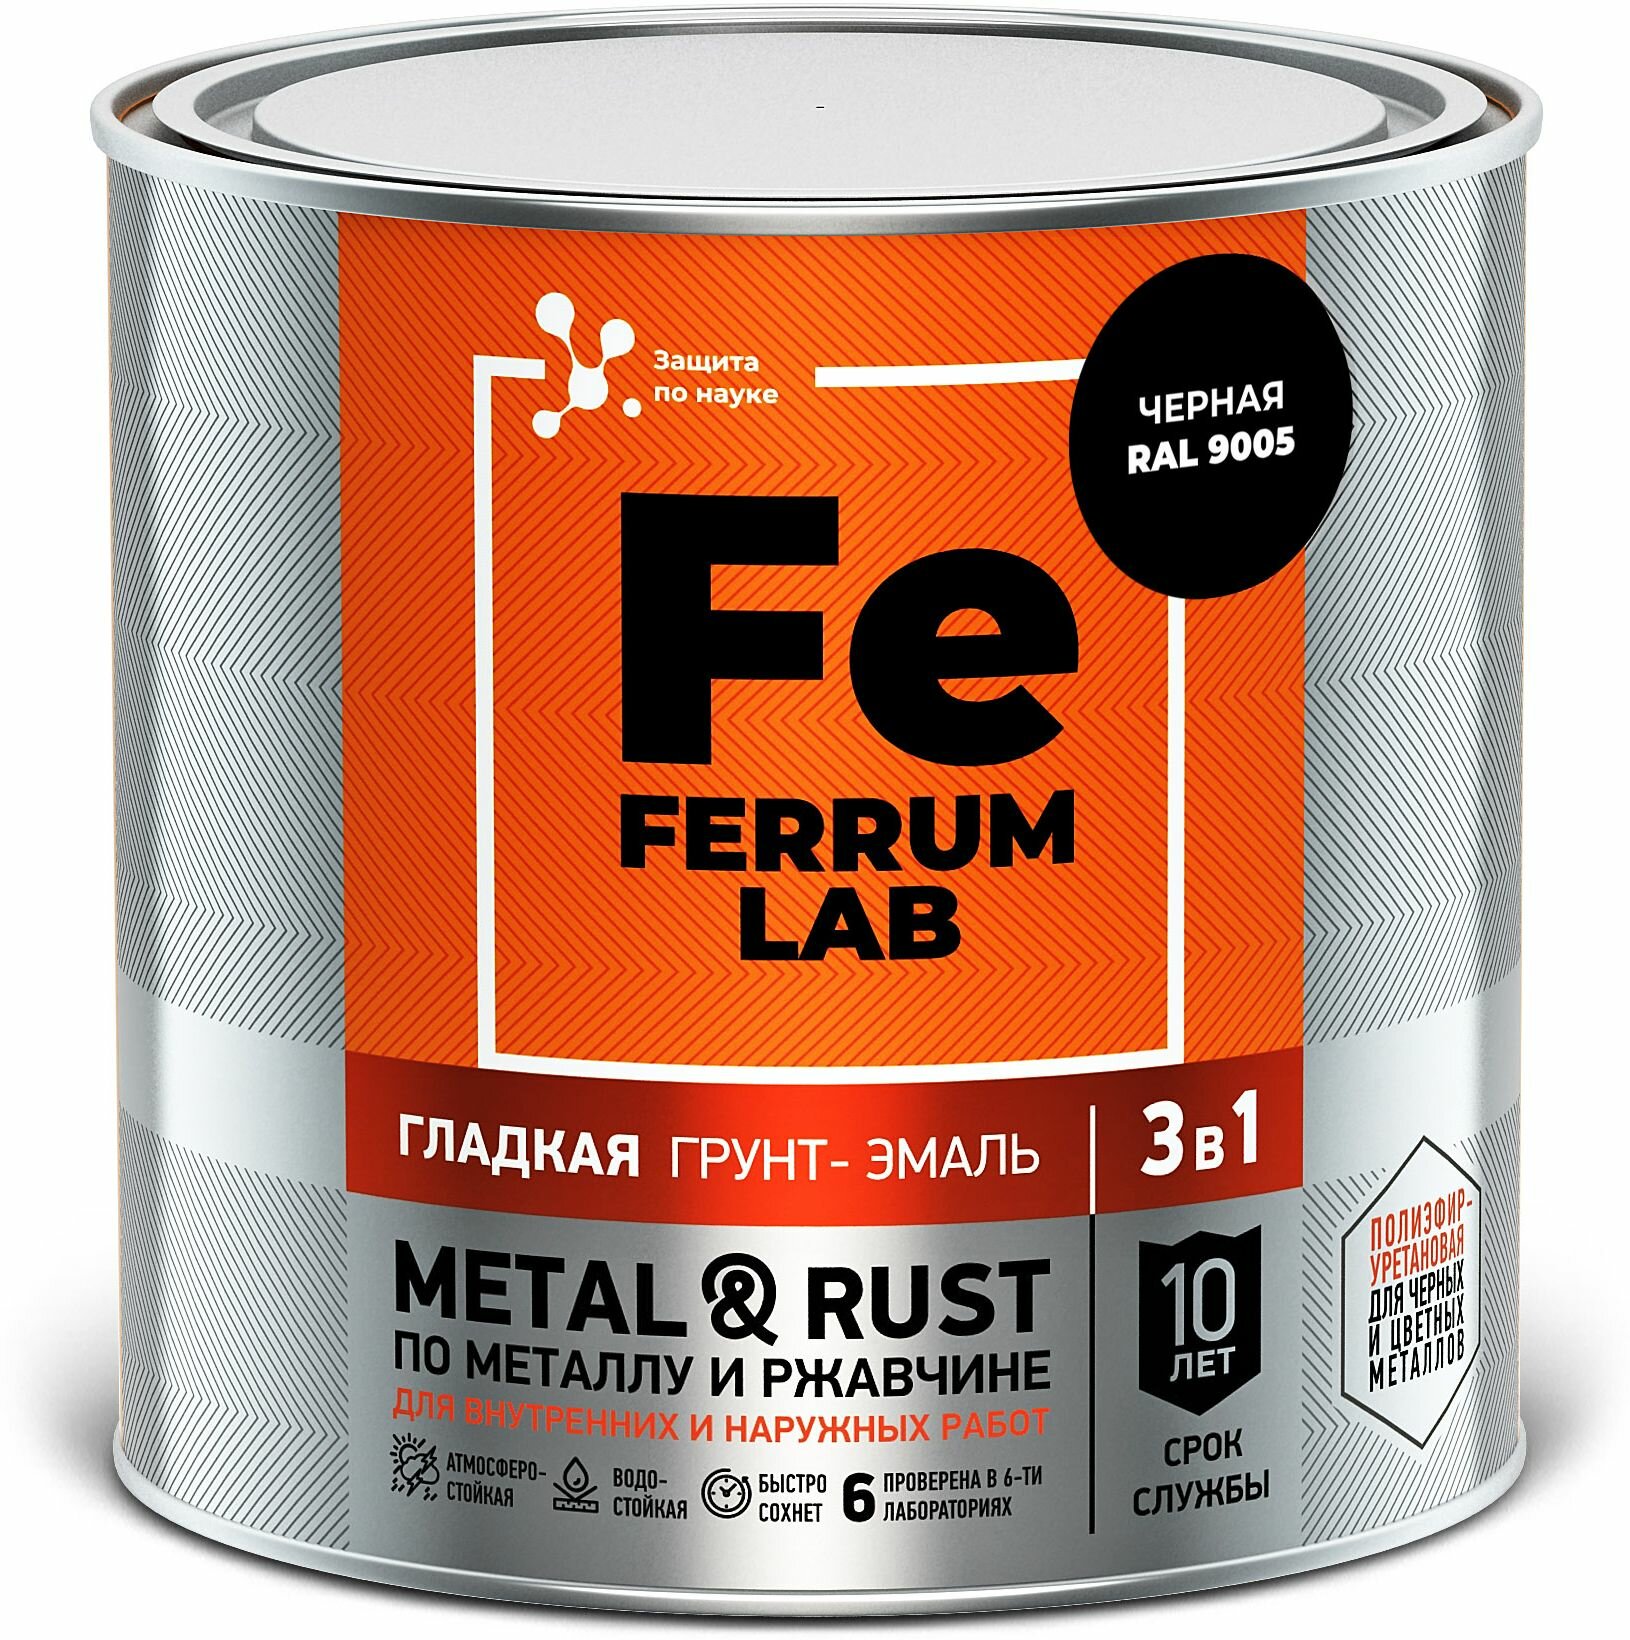 Грунт-эмаль FERRUM LAB по ржавчине 3 в 1 гладкая черная глянцевая банка 075 л